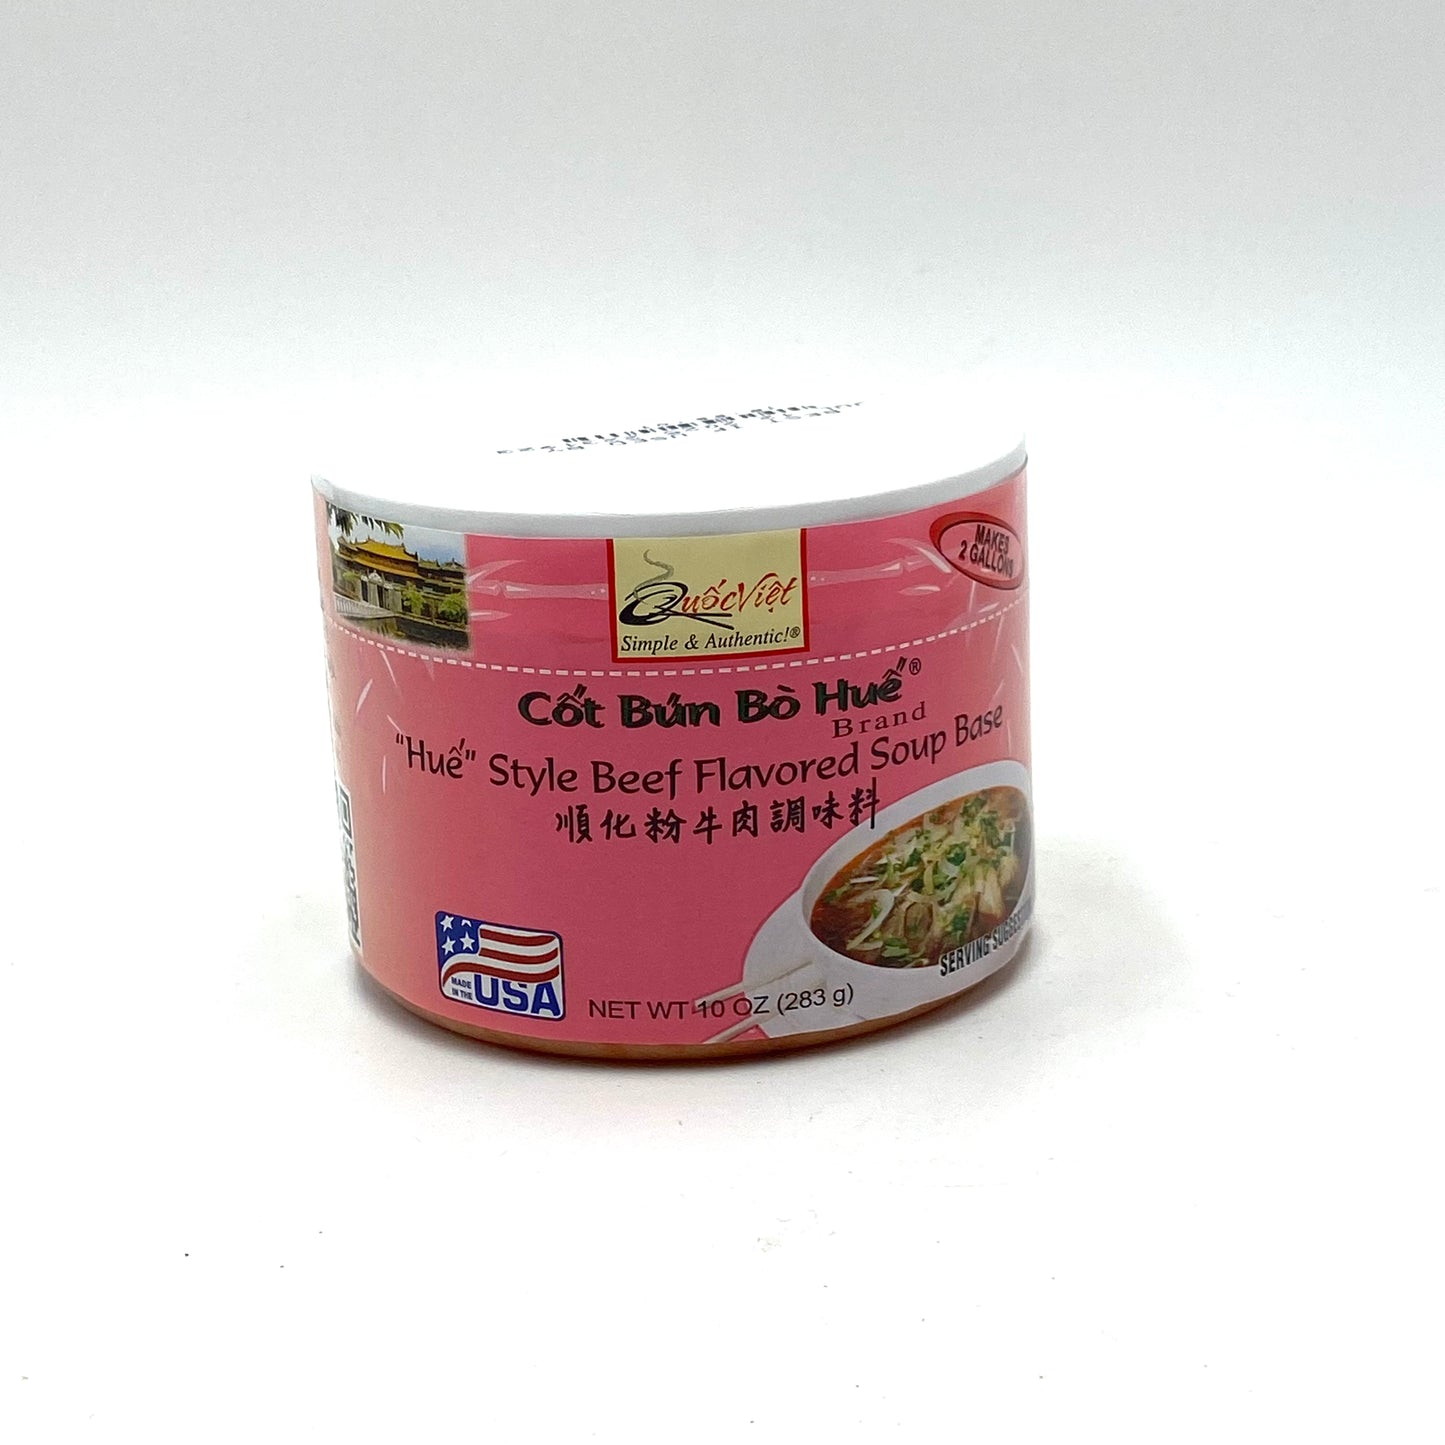 QV Soup Base Beef Flavored (Cot Bun Hue) 283g